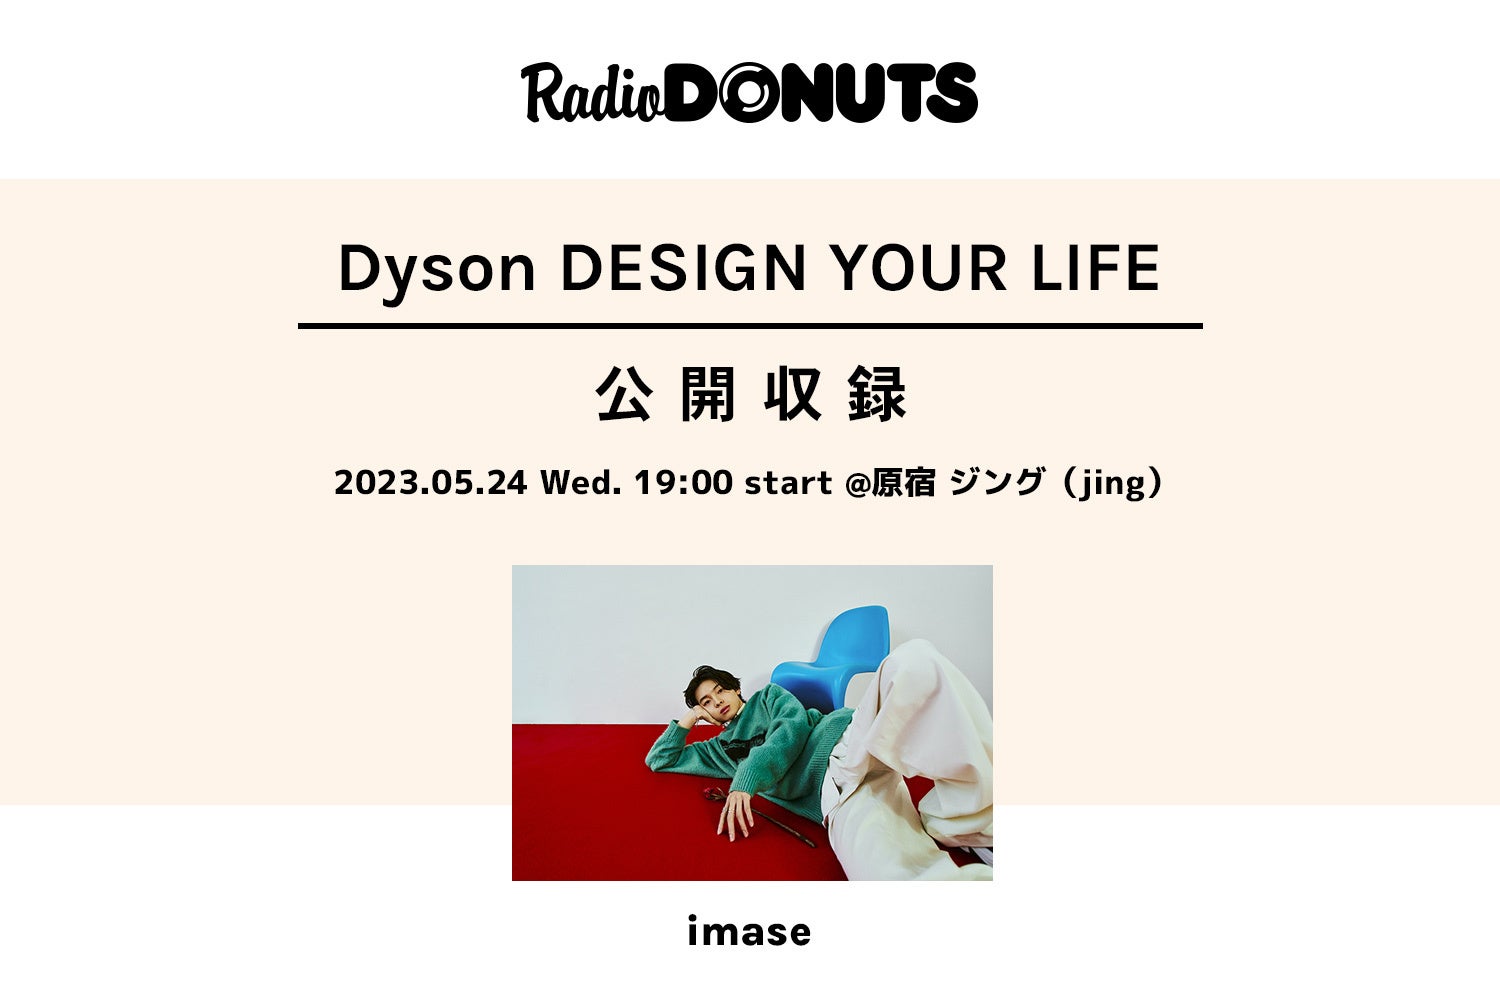 imaseが登場！『RADIO DONUTS』内「DESIGN YOUR LIFE」をDysonとのコラボレーションでお届け。公開収録を5/24に実施のサブ画像1